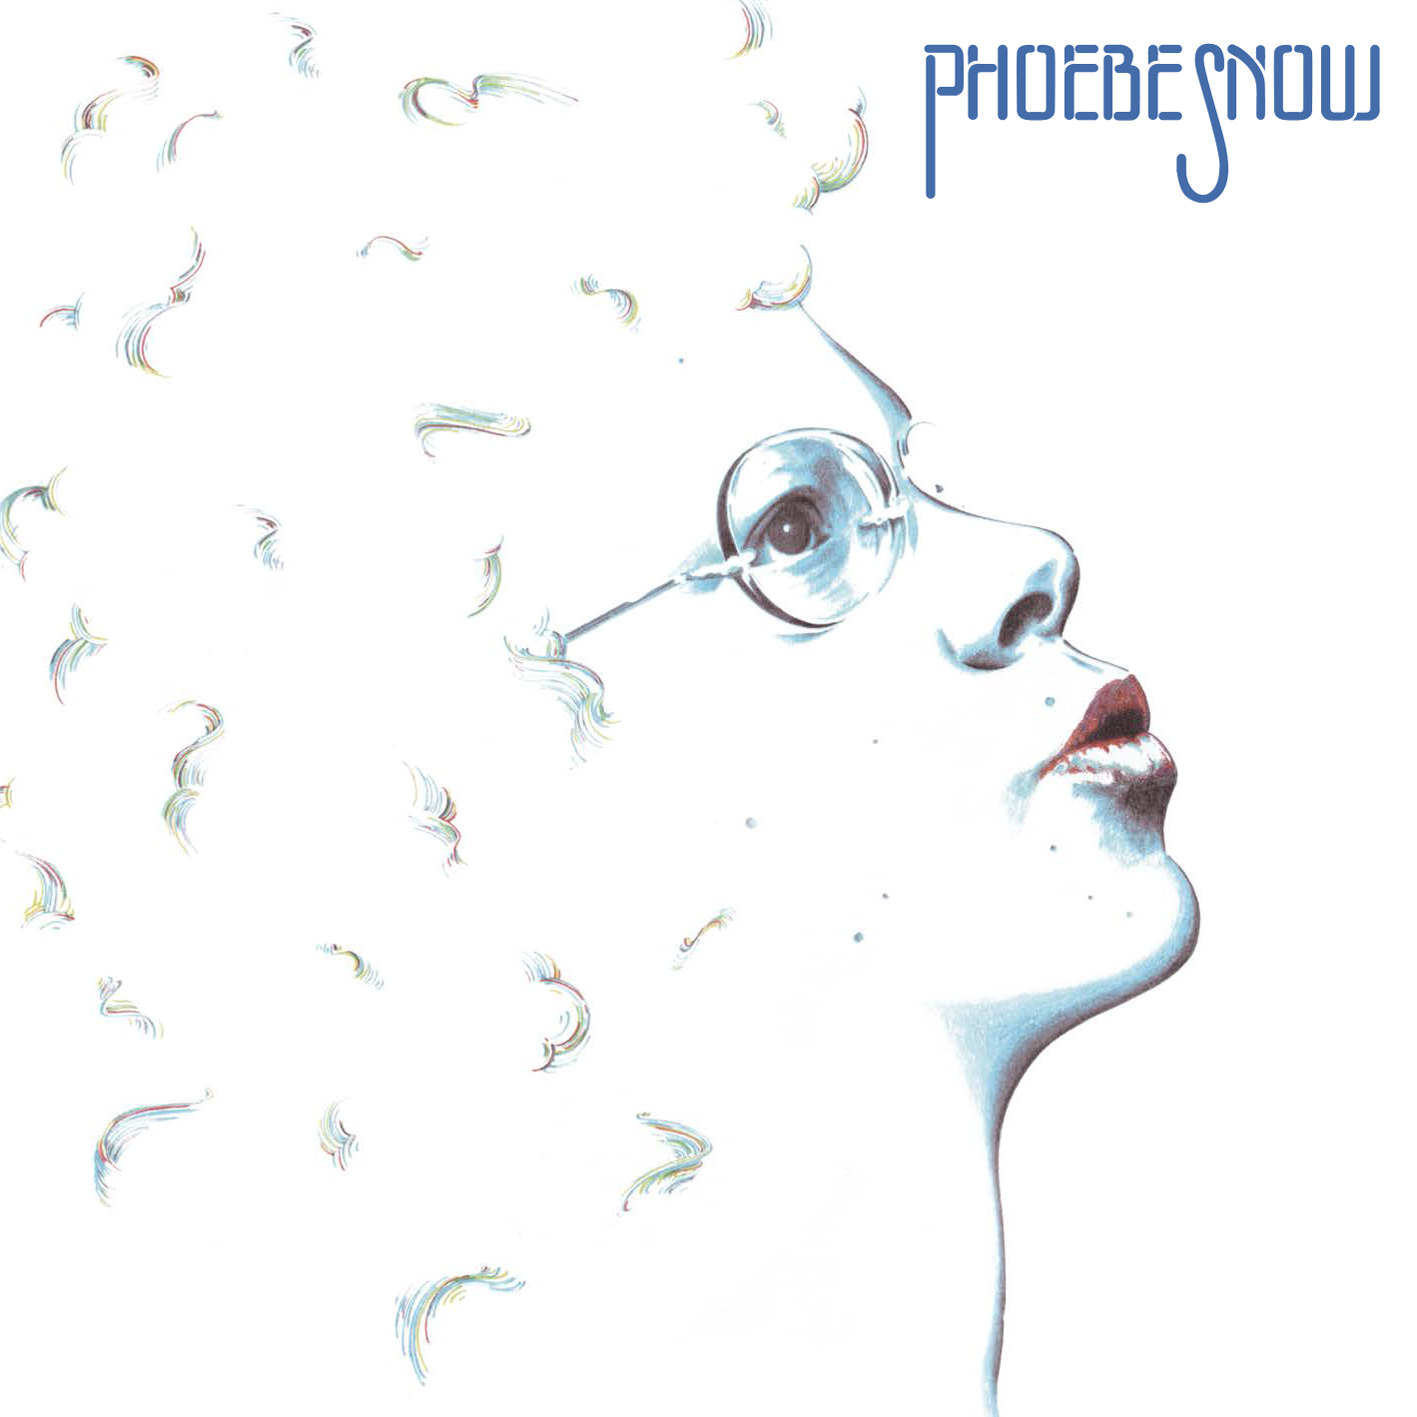 Phoebe Snow - Phoebe Snow (1974) [APO Remaster 2014] SACD ISO